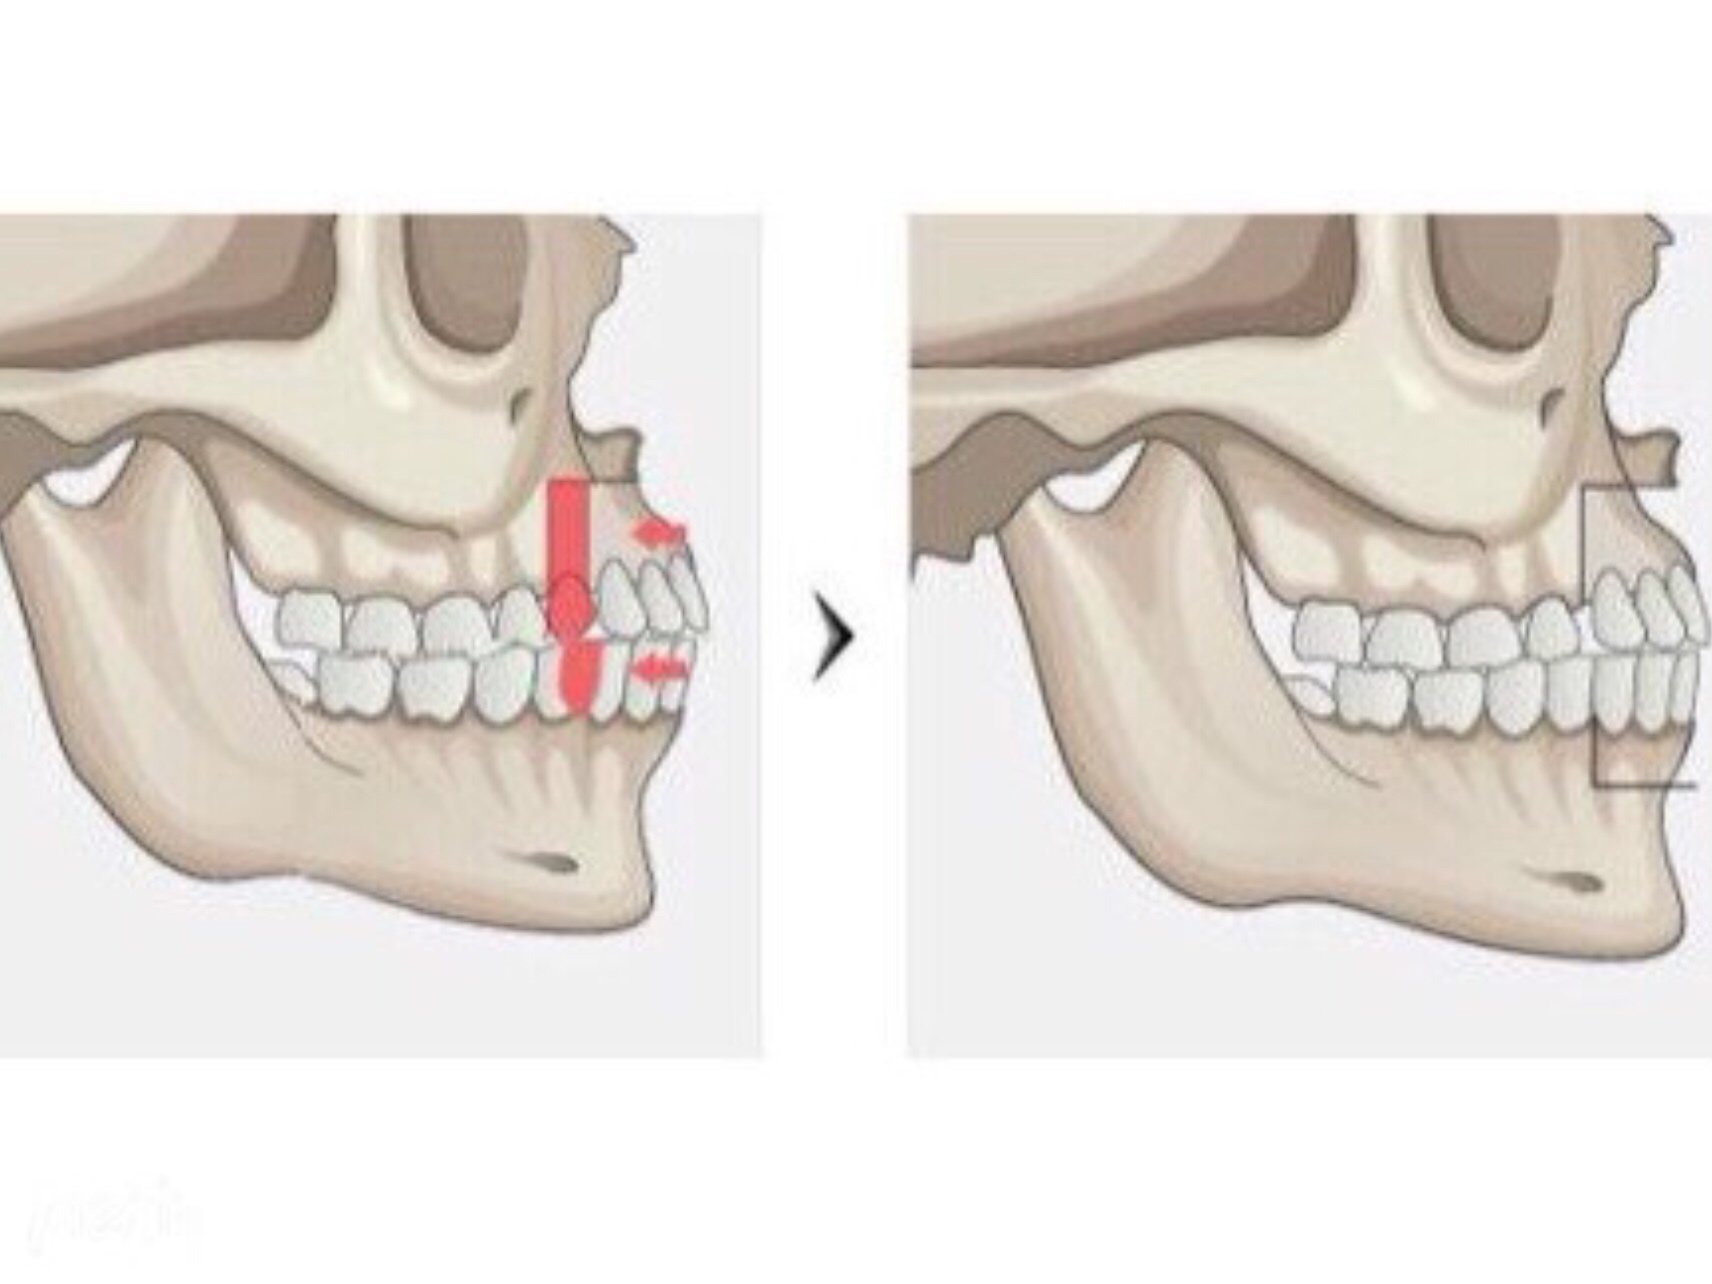 上颌骨的生长,另一方面能促进下颌骨的发育,所以上下颌骨的生长比率会